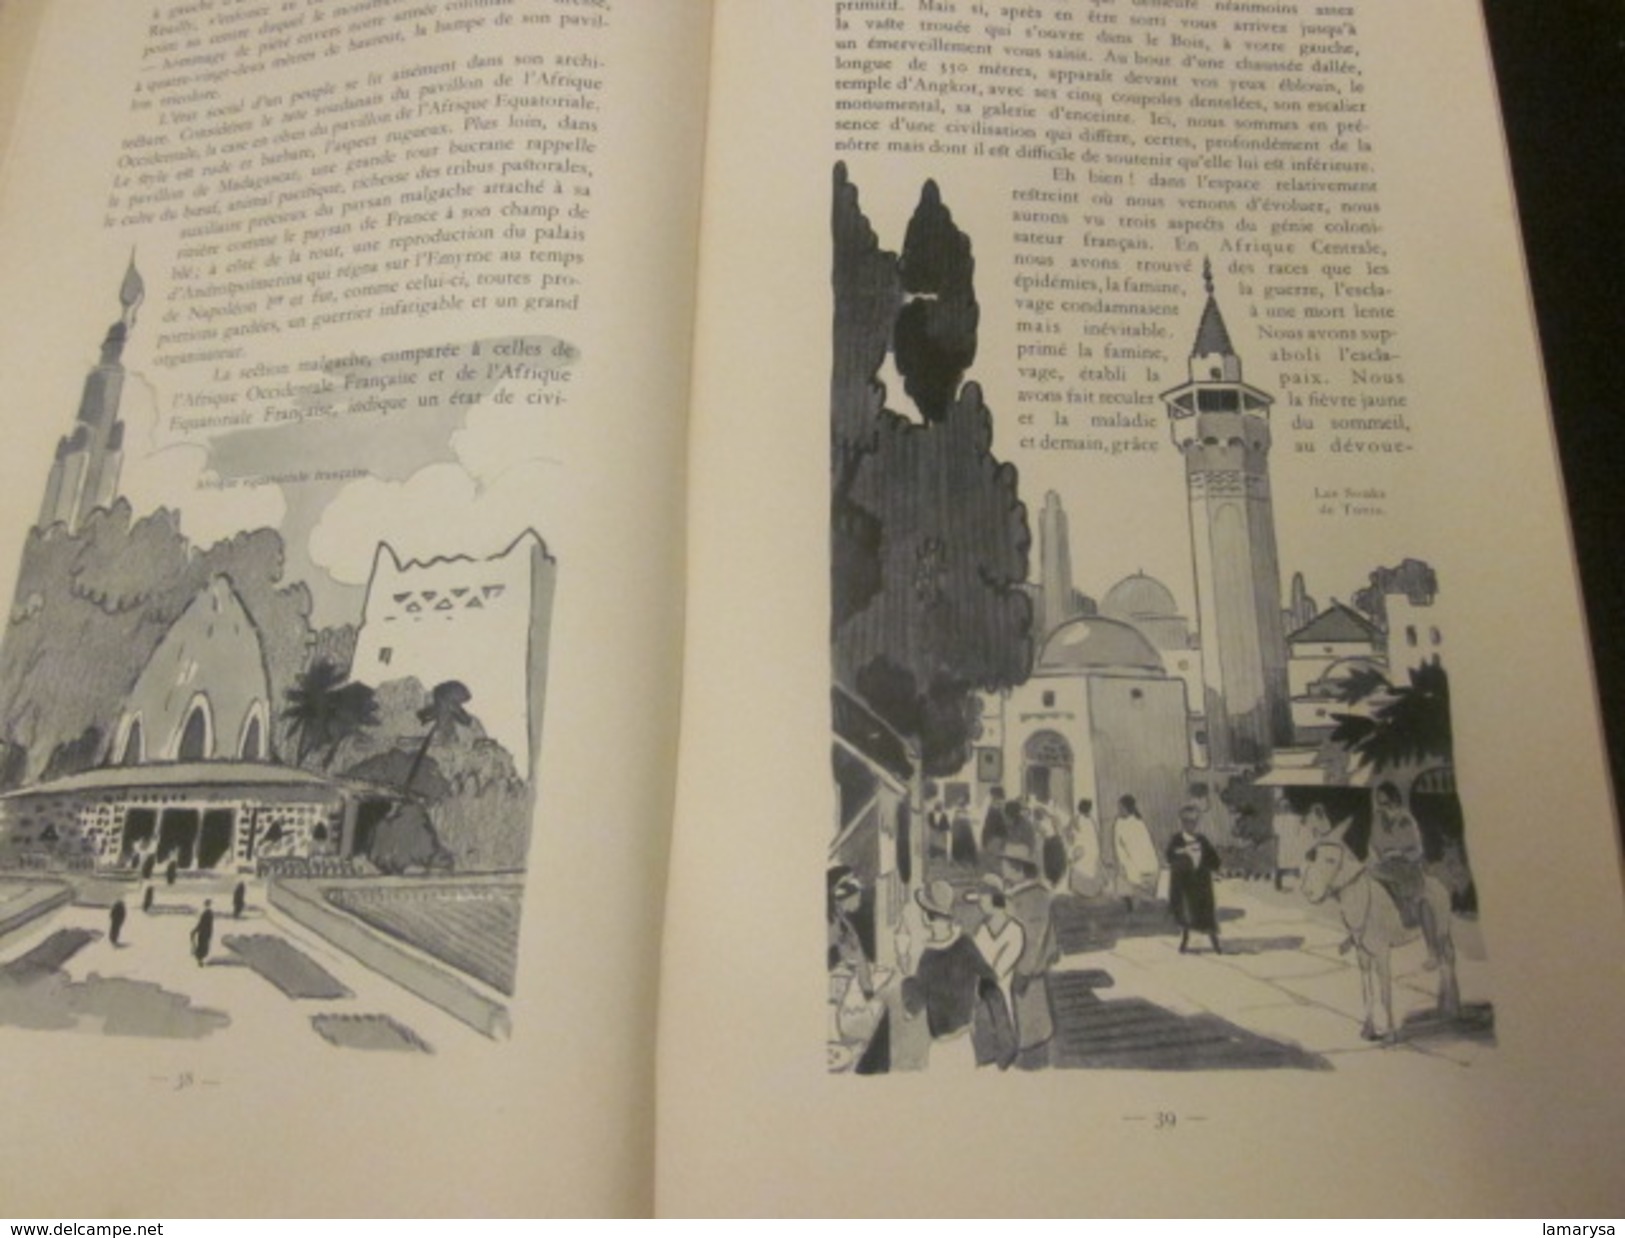 AGENDA PLM 1931-305 pages-France Paris-Corté-Corse-Alger-Tunisie-Maroc-Expo coloniale-Pub-Gravure couleur-Voir 72 Scanns